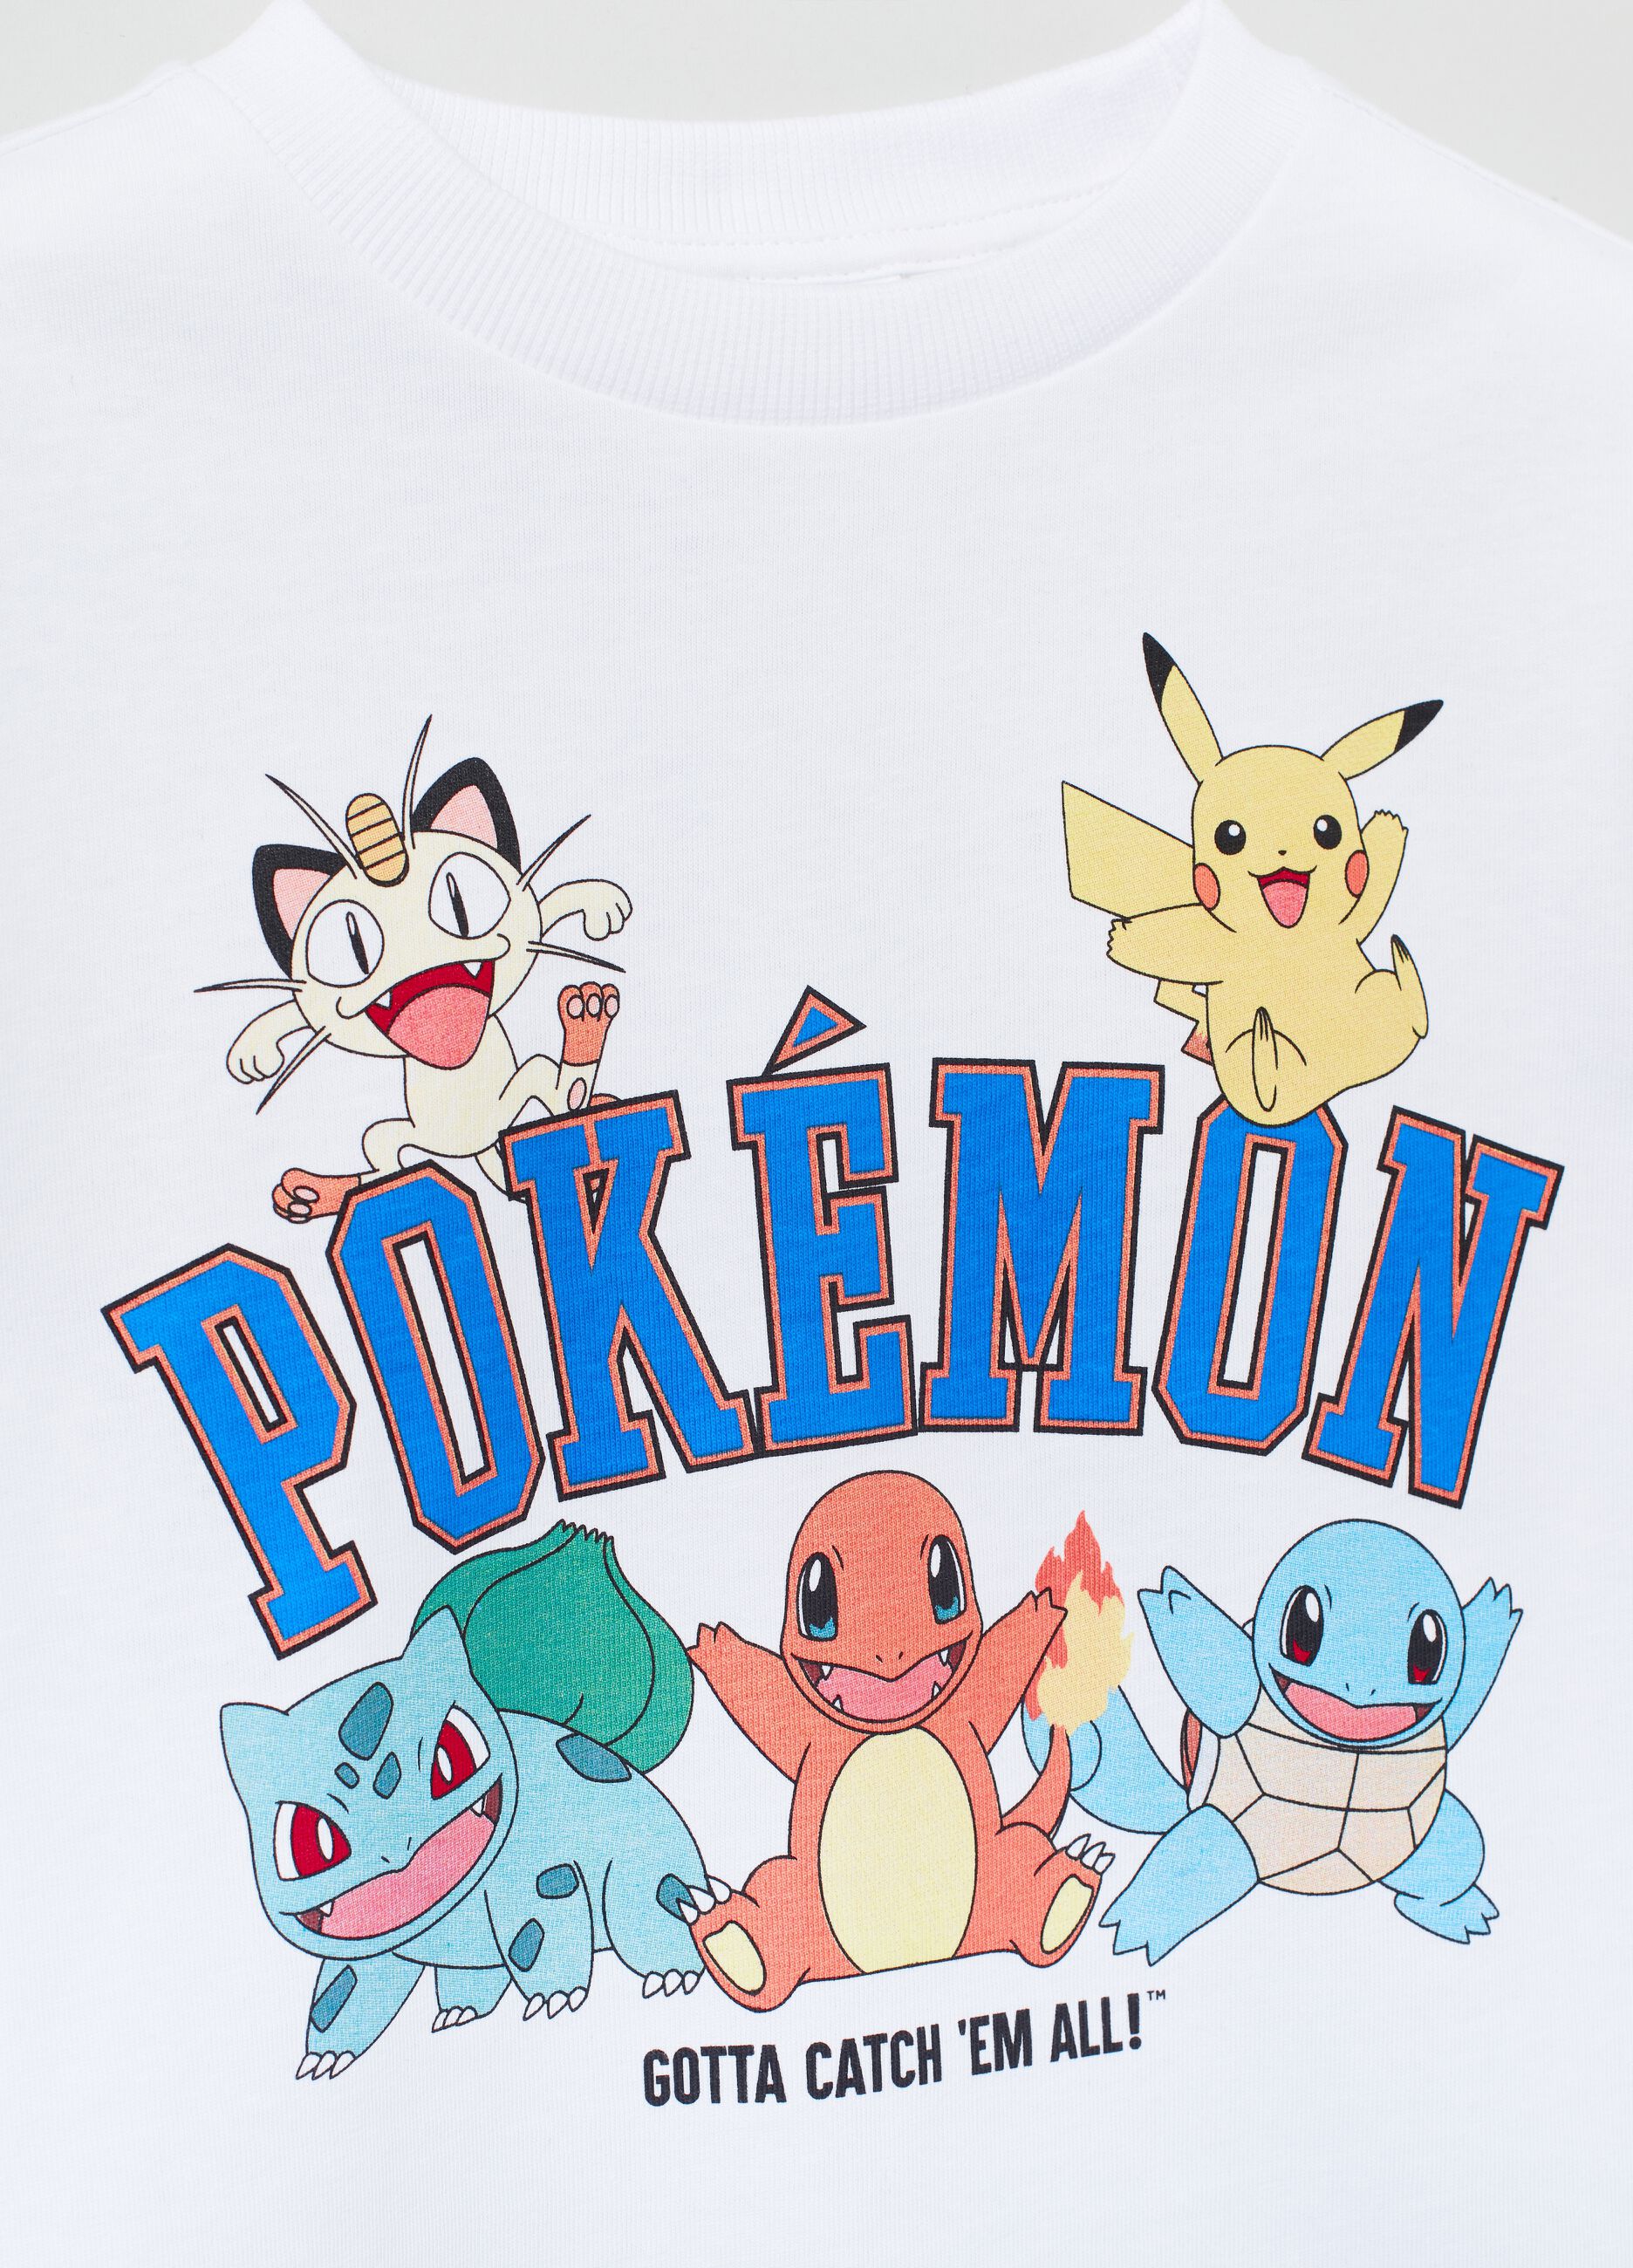 Camiseta con estampado Pokémon